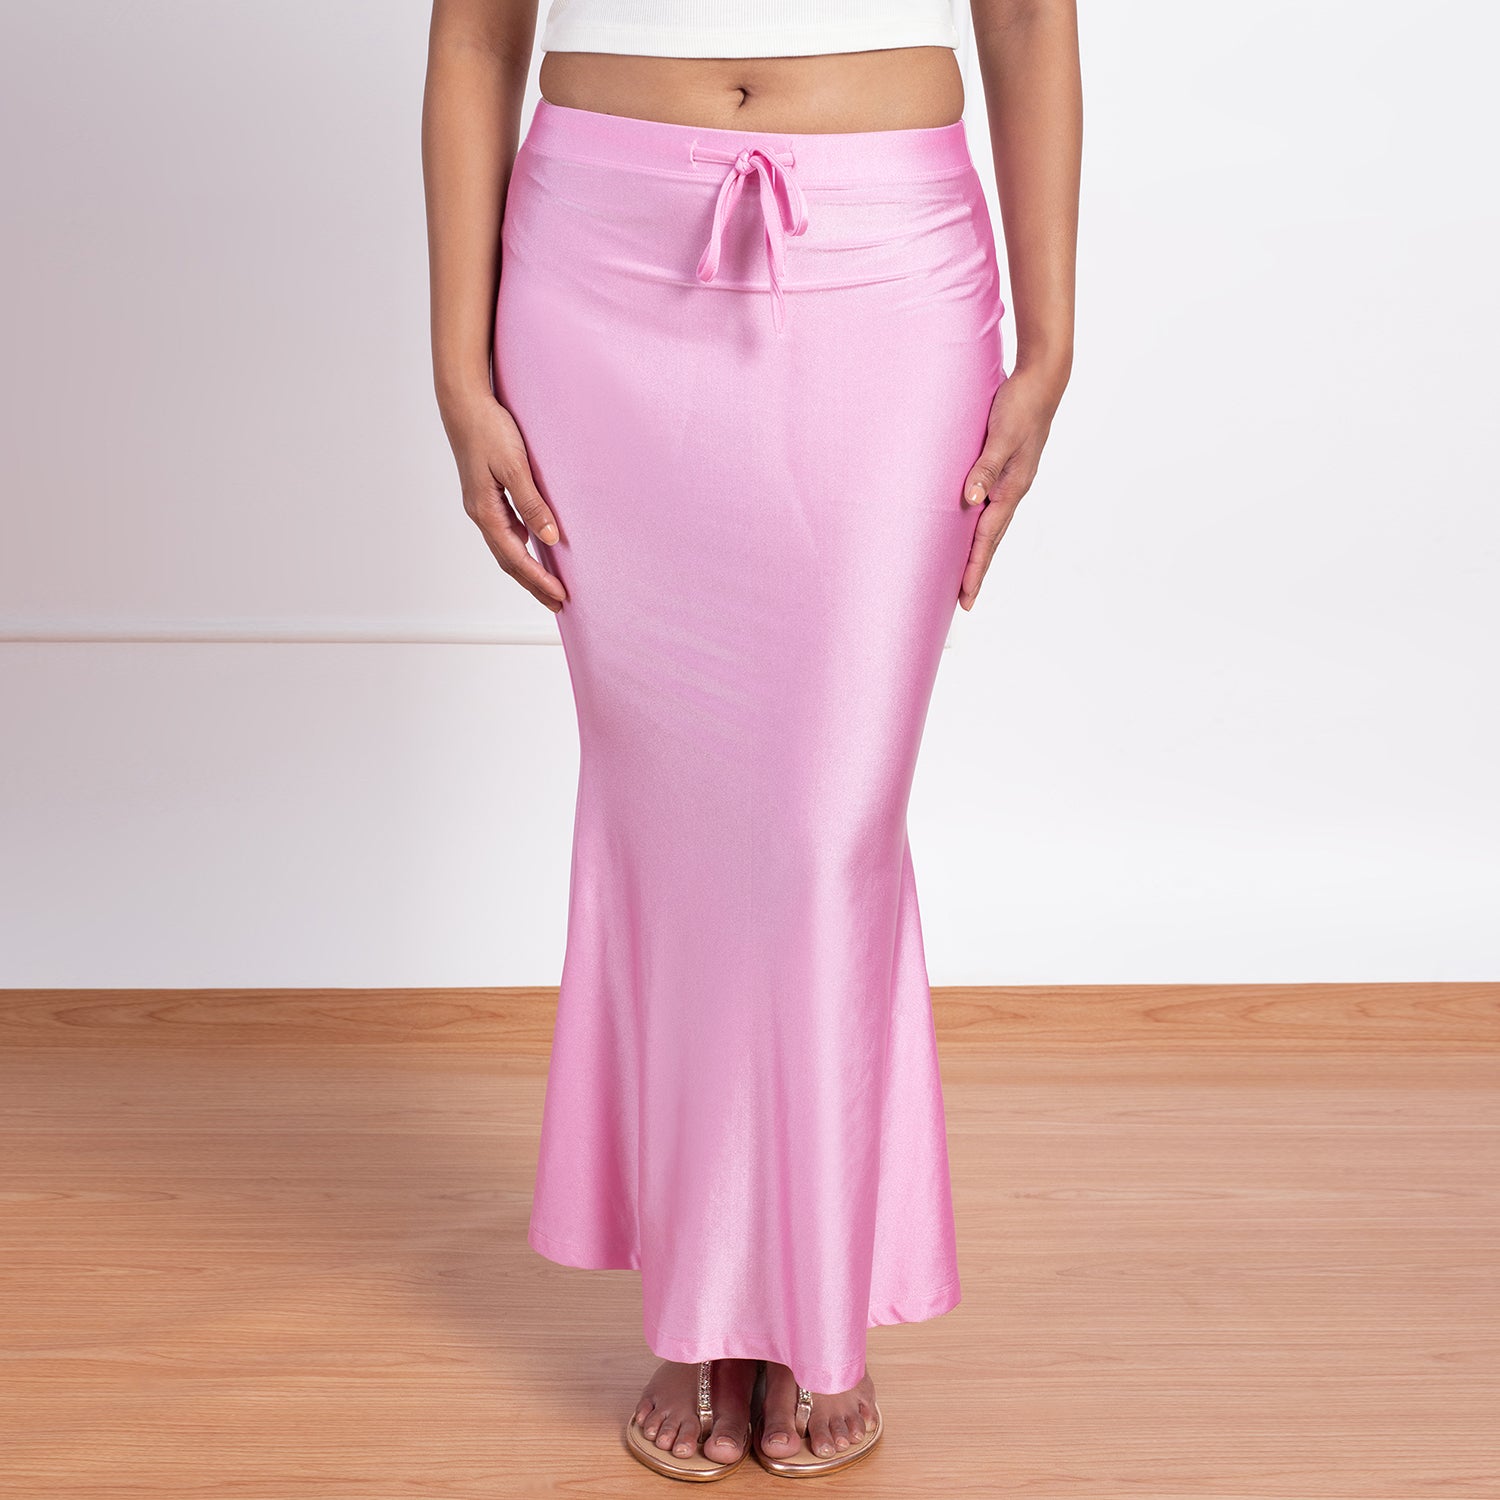 Mermaid Saree Petticoat-NYOE01 Onion Pink – Nykd by Nykaa